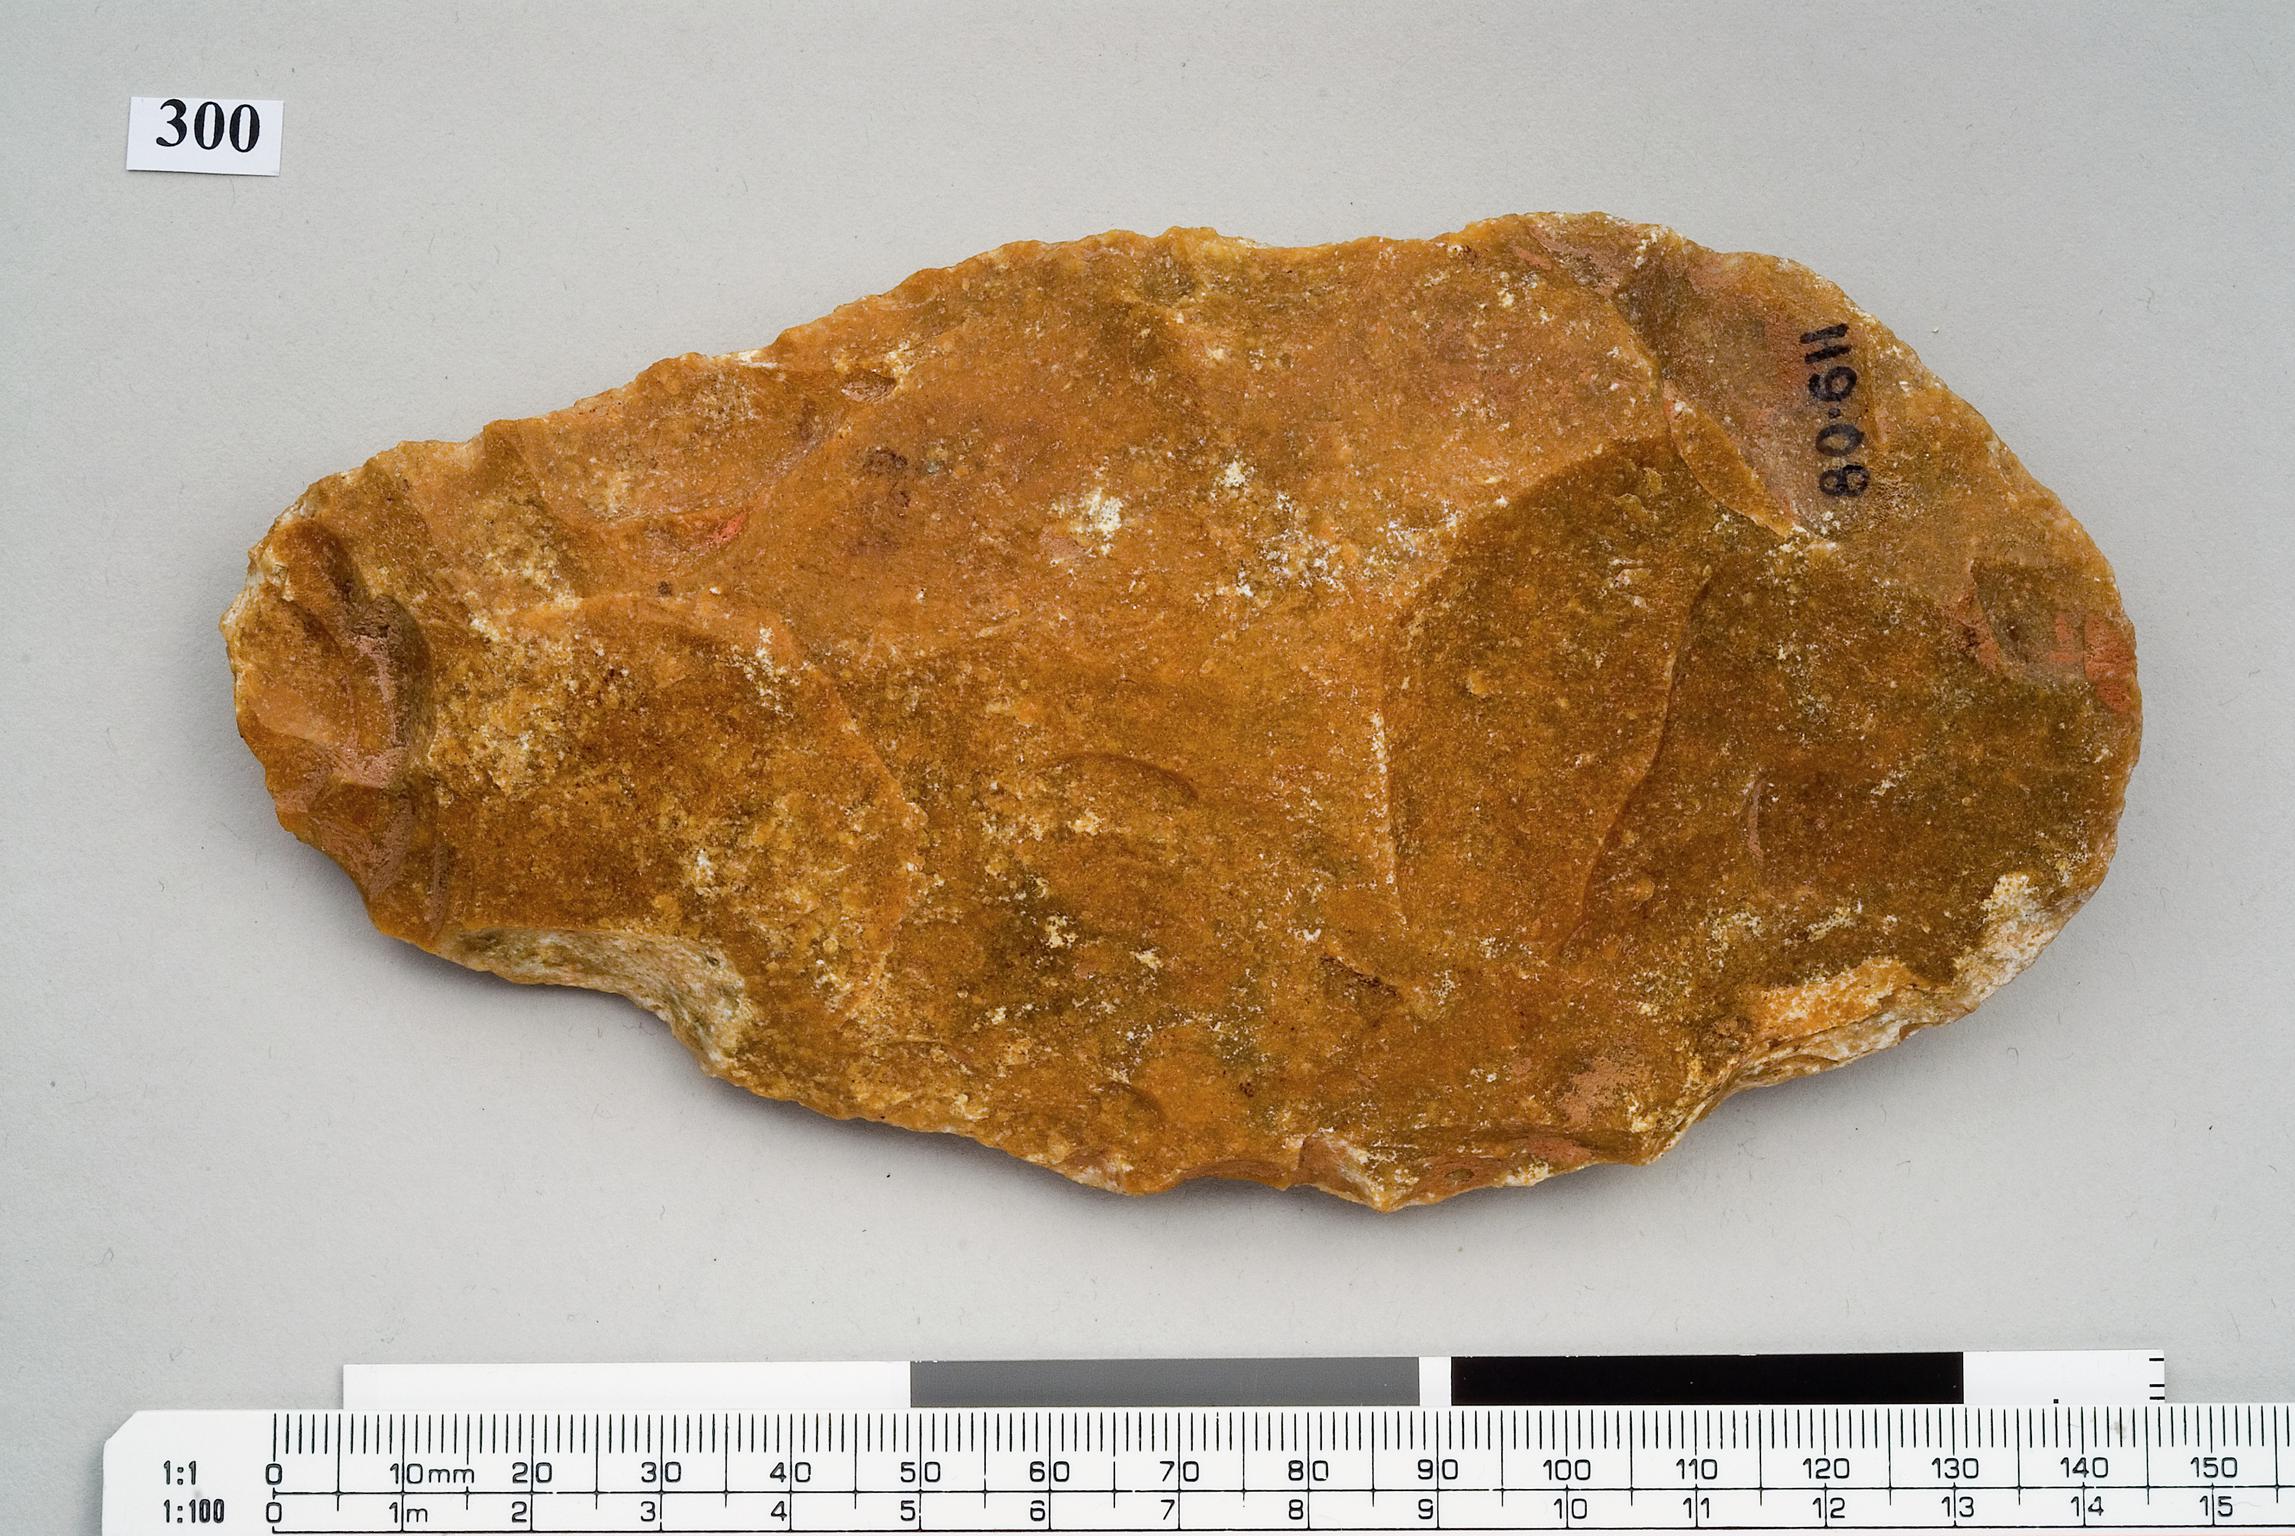 Lower Palaeolithic chert handaxe